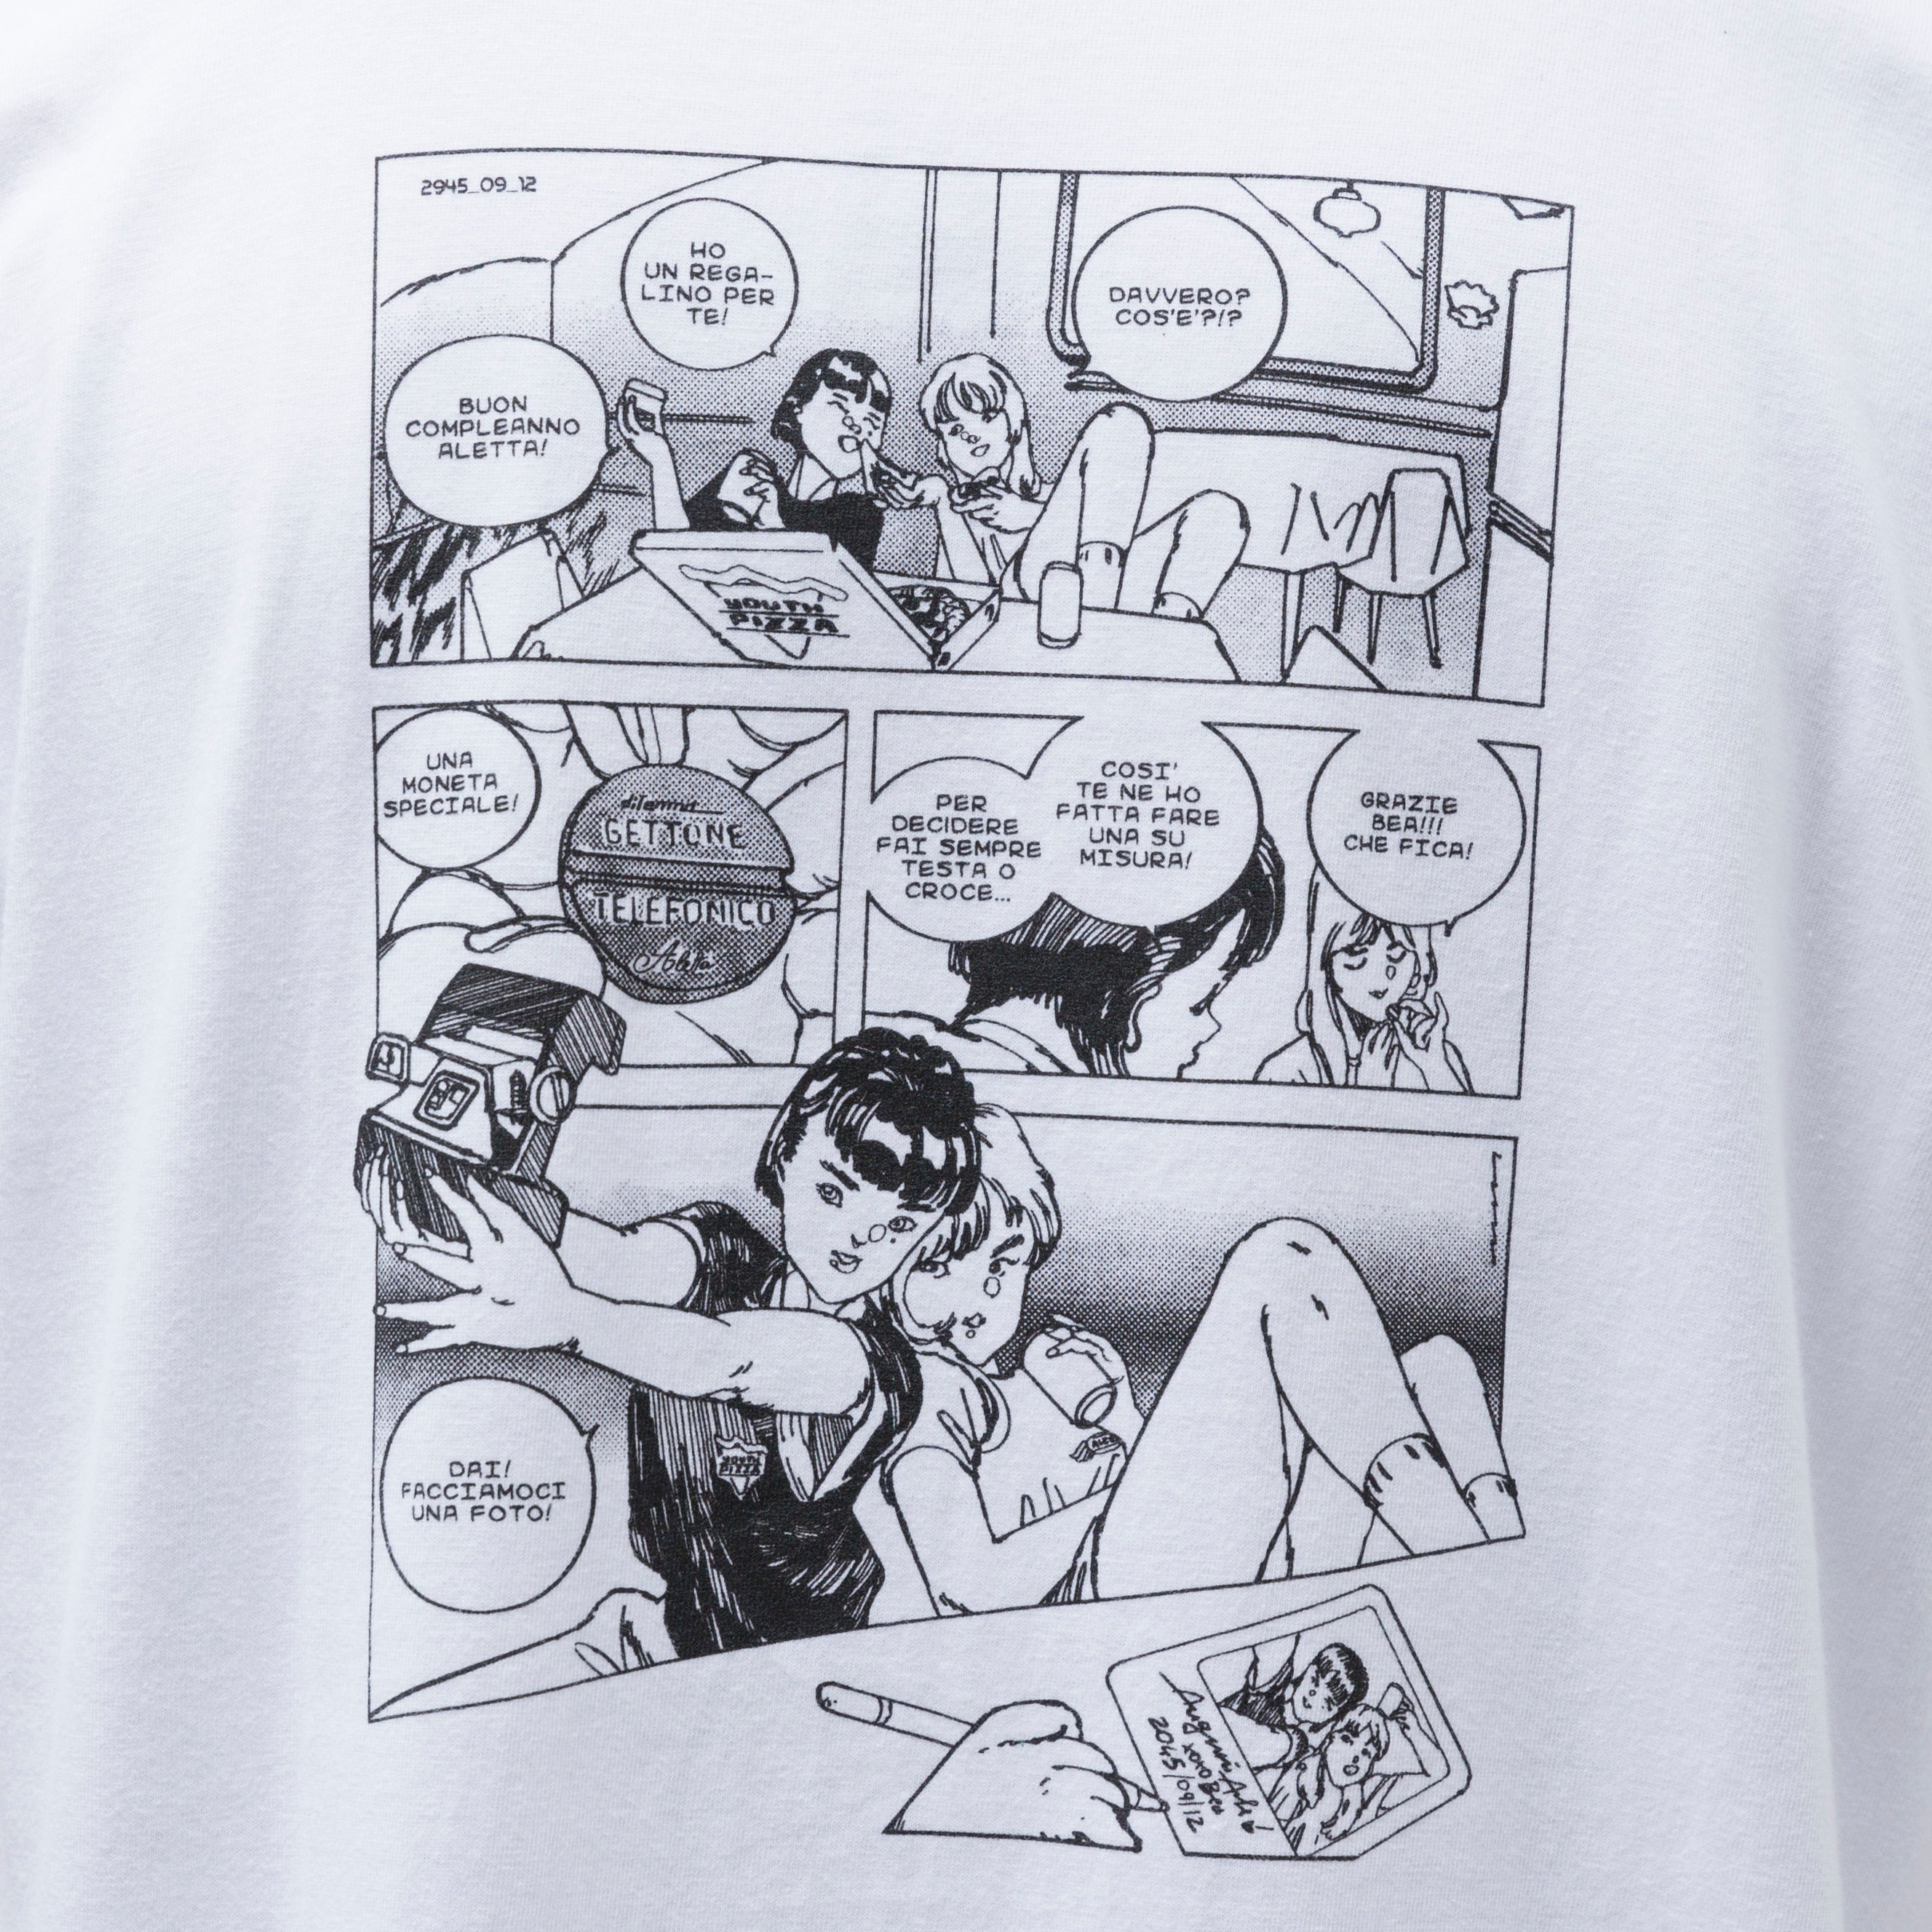 21SS Comic Tshirt/WHITE